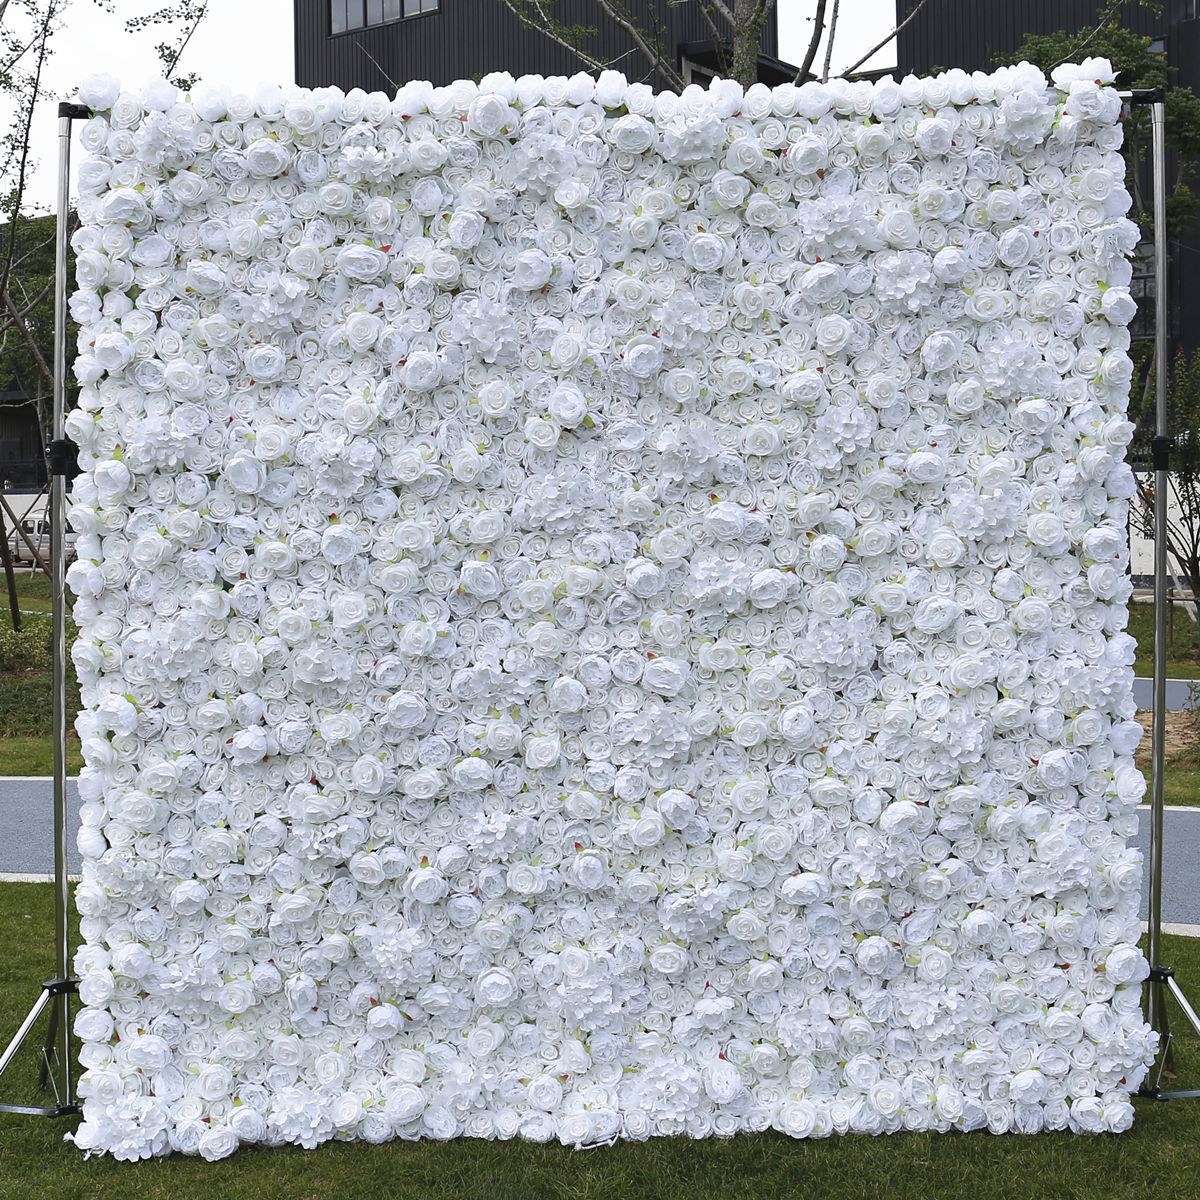 Cross border bílá 5D tkanina spodní simulace květinová stěna pozadí stěna svatební rekvizity internet celebrity studio fotografie pivoňka květinová stěna